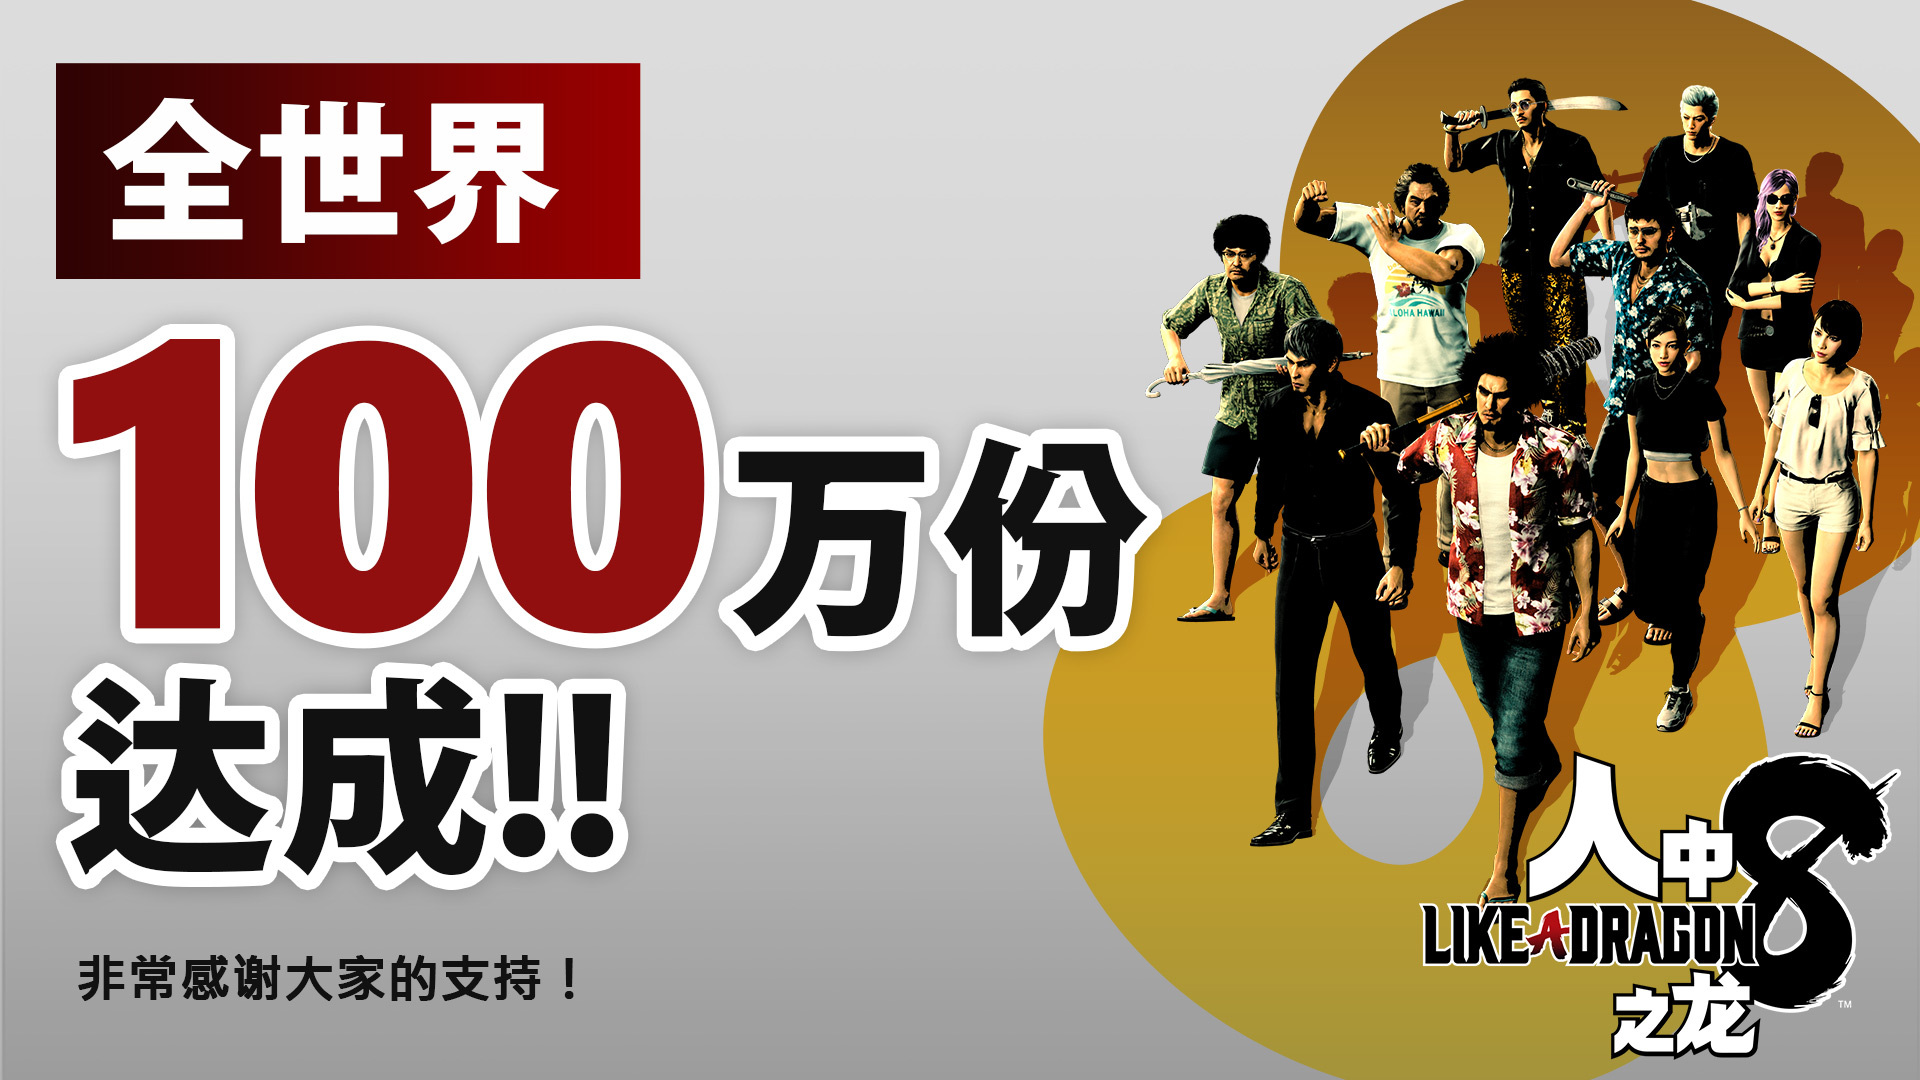 《如龙8》发售一周销量突破100万